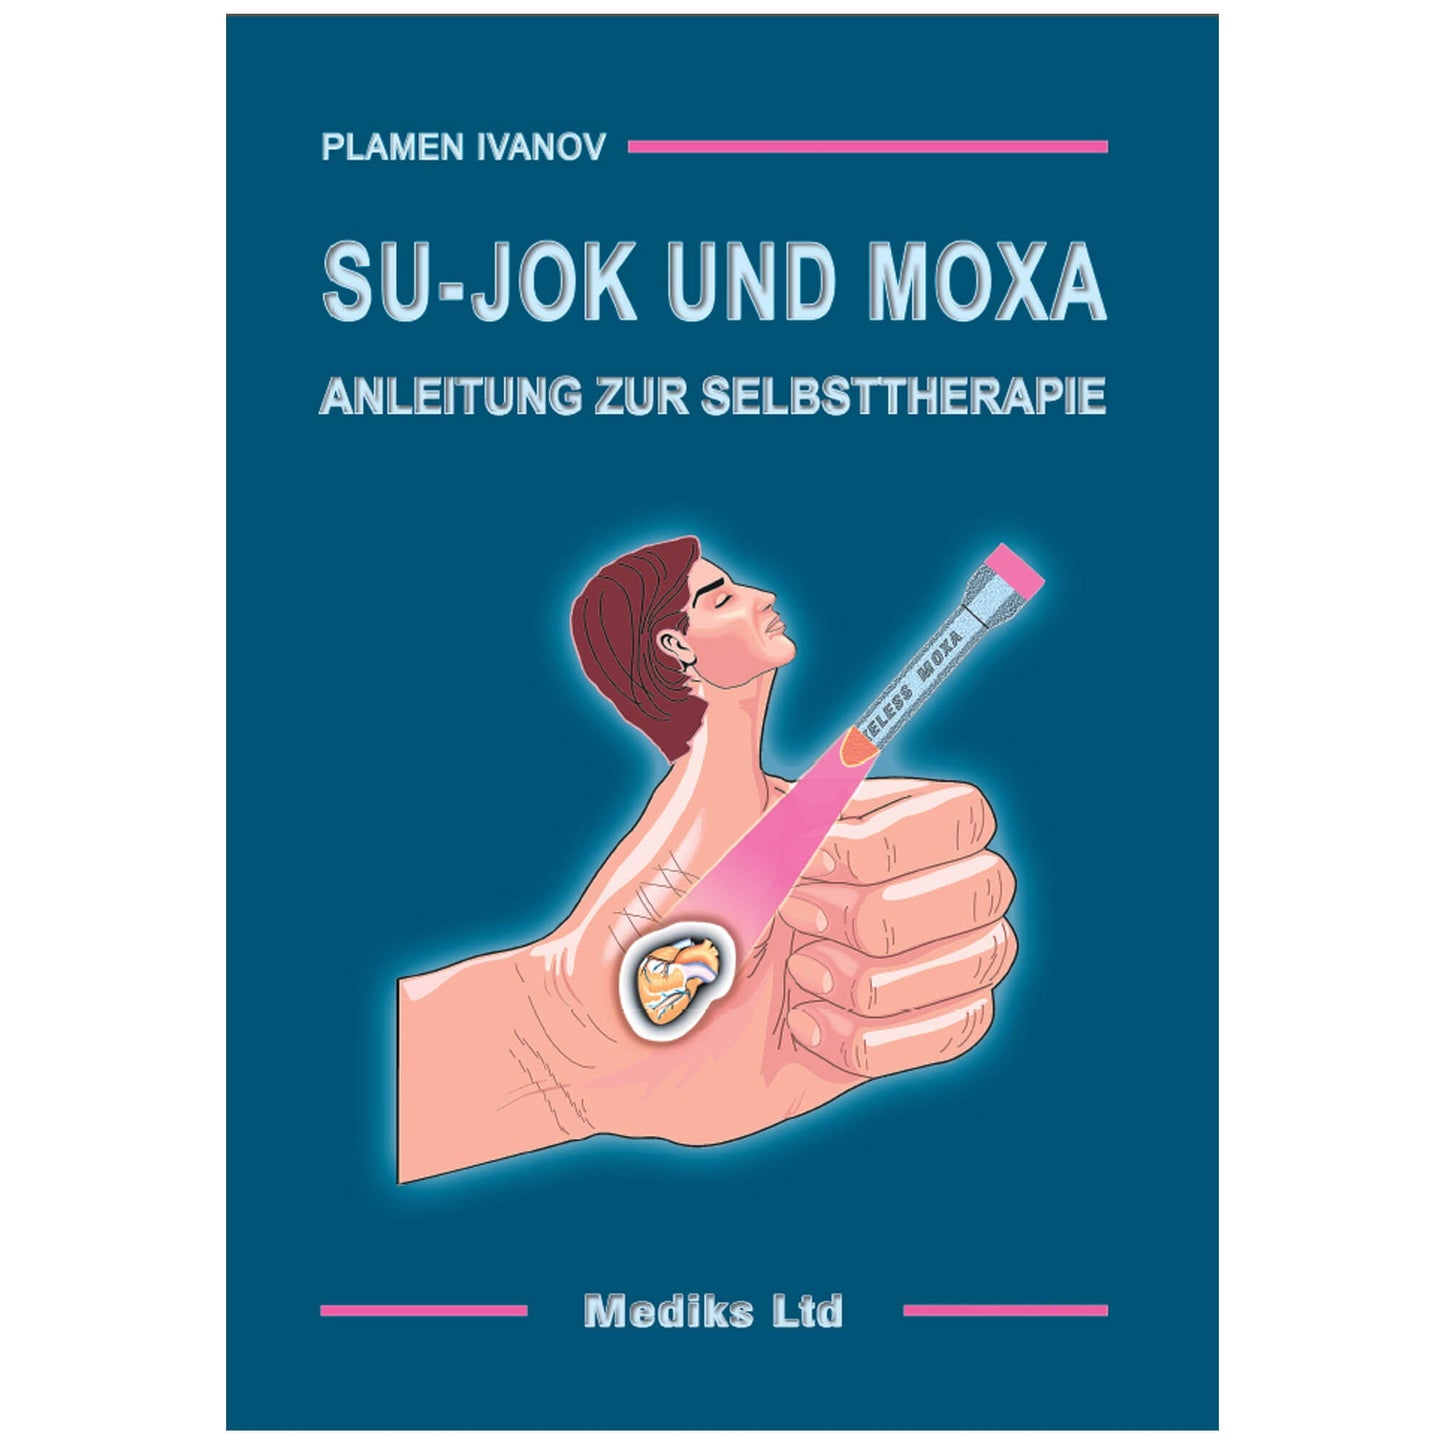 Libro "Su-Jok und Moxa"